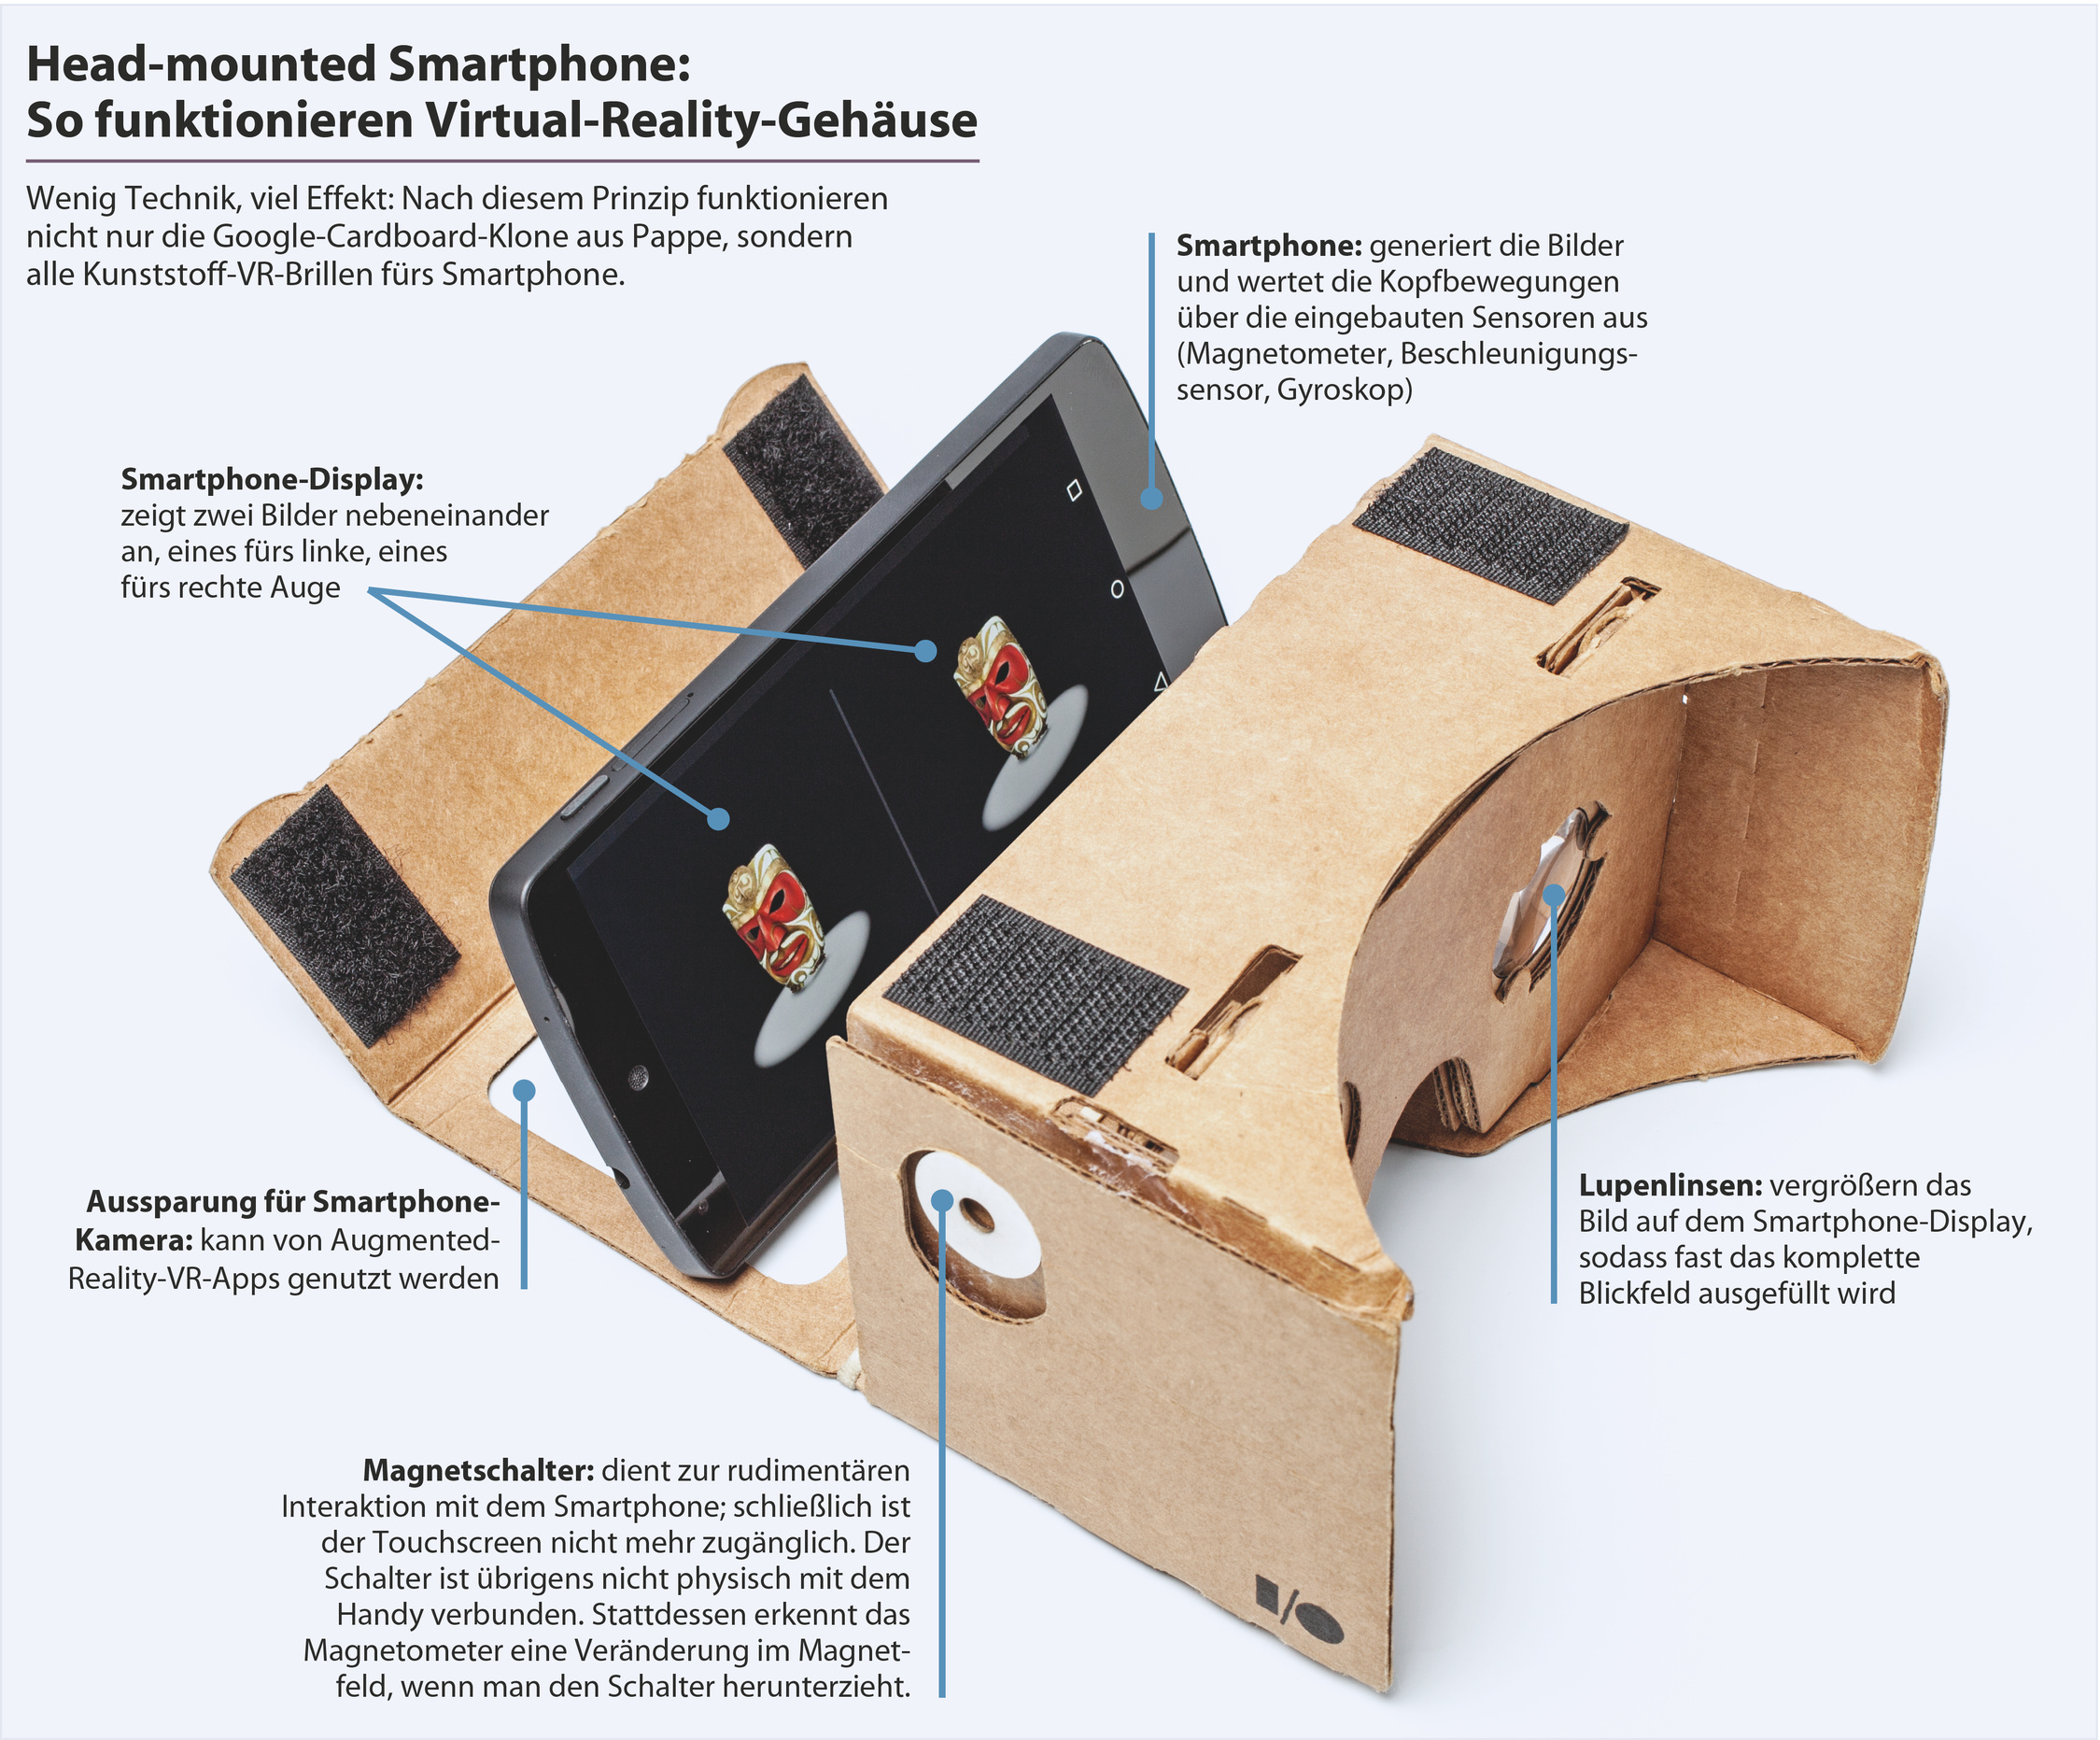 Das Smartphone wird zur Virtual-Reality-Brille | c't Magazin